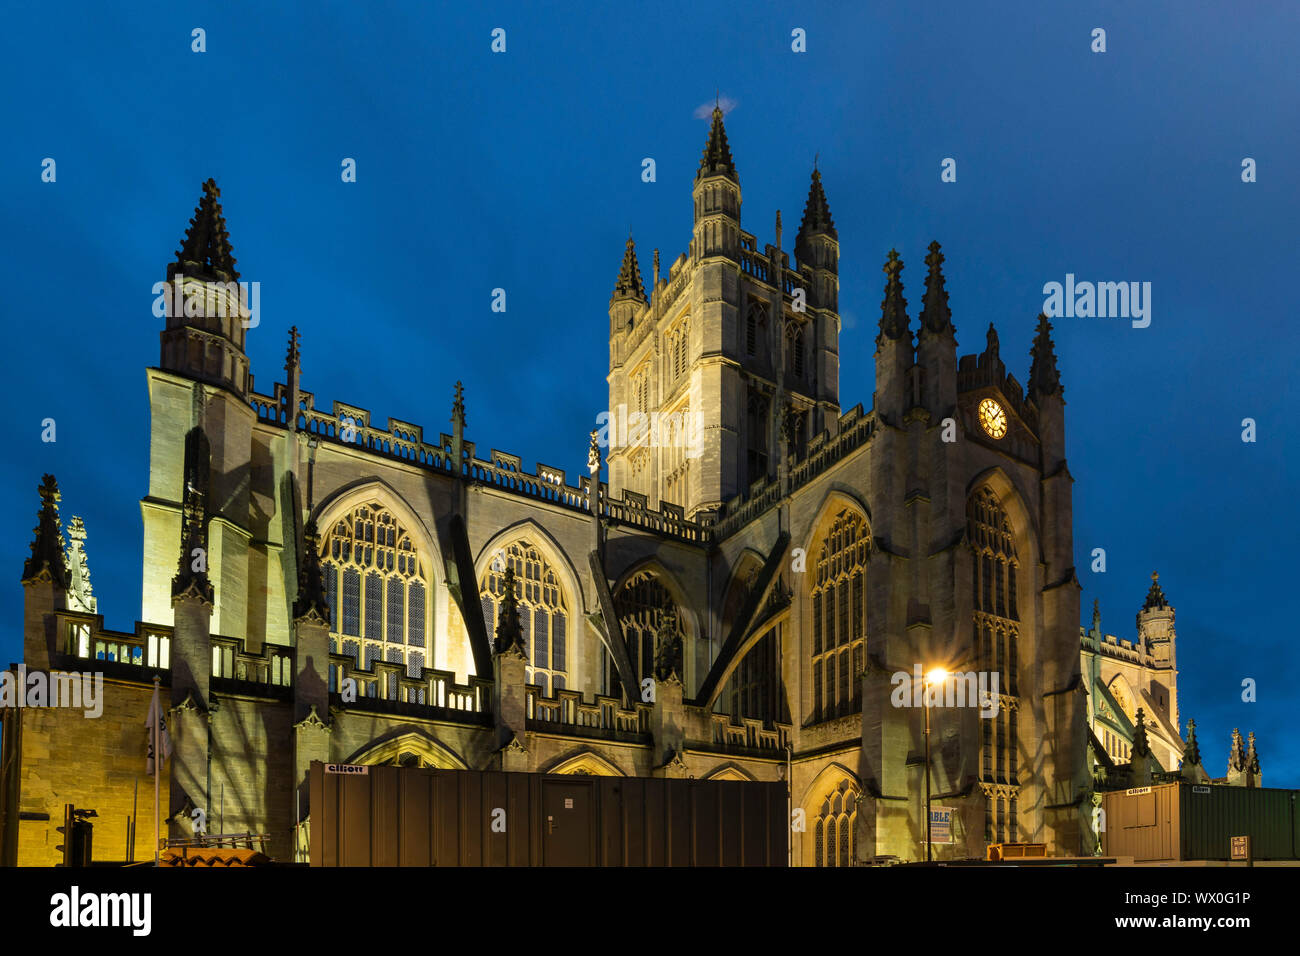 L'Abbaye de Bath est éclairée la nuit, baignoire, UNESCO World Heritage Site, Somerset, Angleterre, Royaume-Uni, Europe Banque D'Images